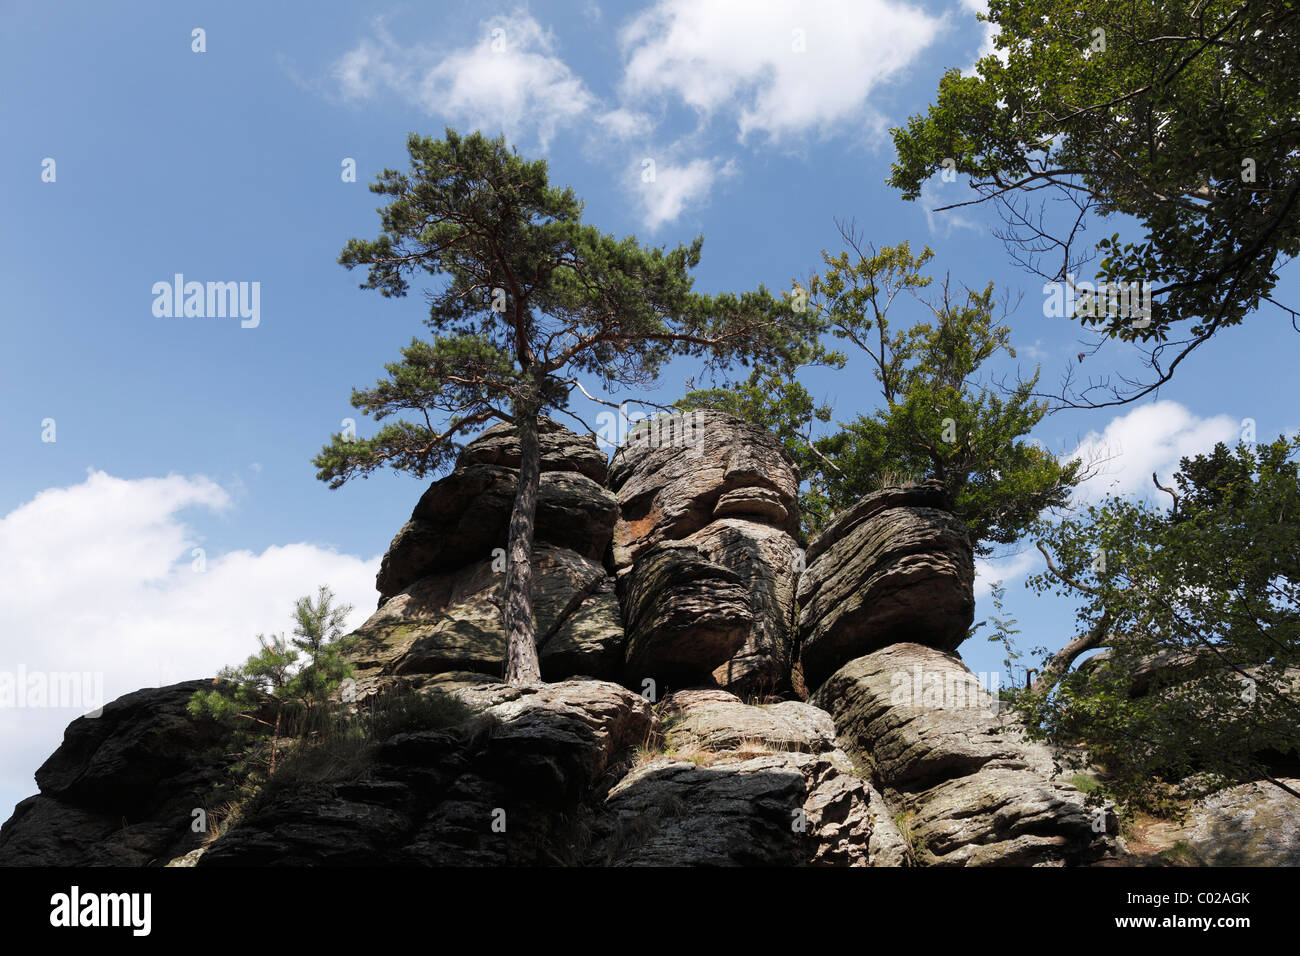 Hoher Stein montagna, Muehlberg, Dunkelsteinerwald, Wachau, Mostviertel, Austria Inferiore, Austria, Europa Foto Stock